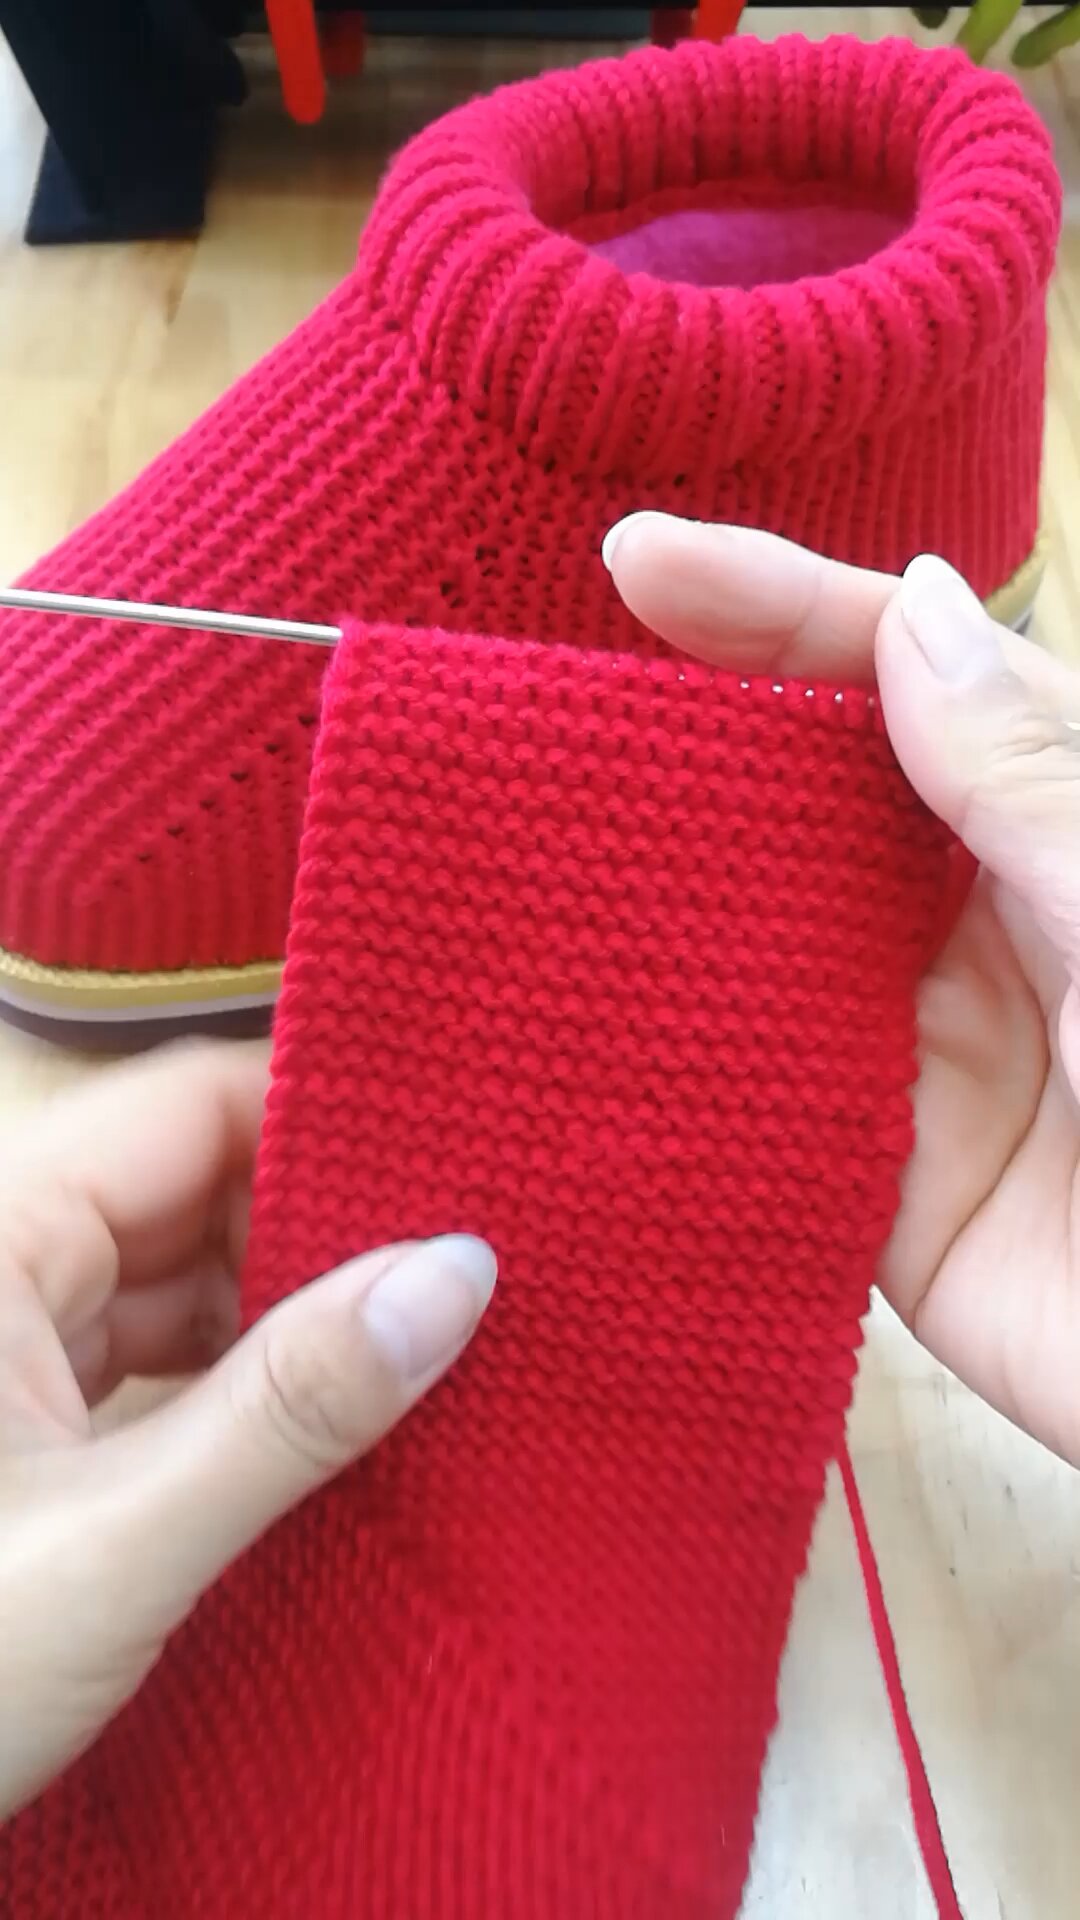 毛线棉鞋编织方法图片